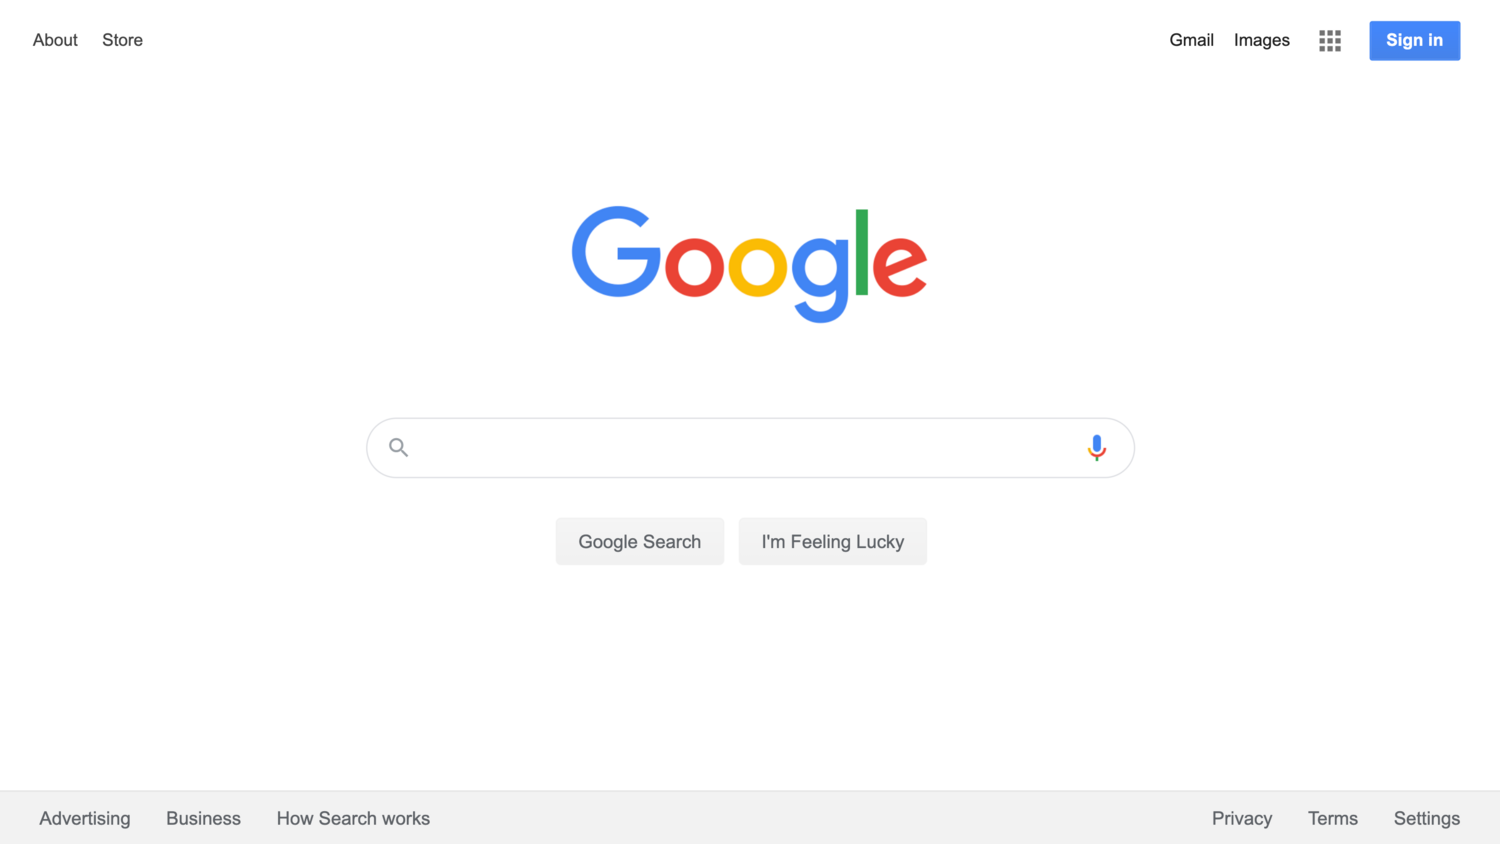 Jogos Olímpicos de Londres são homenageados por Doodle do Google